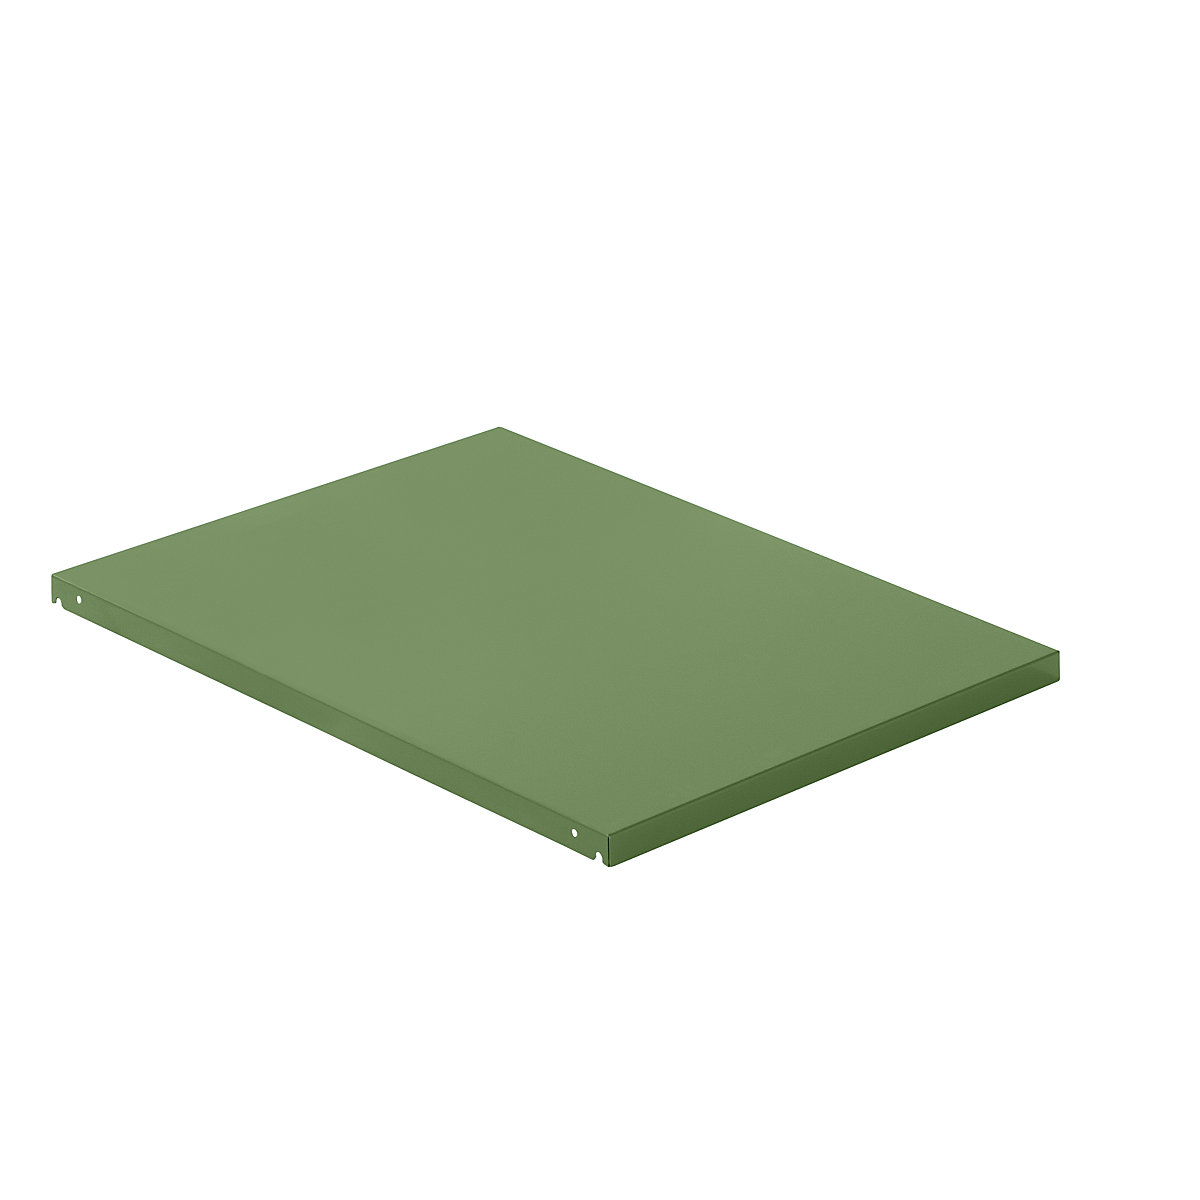 Ripiano superiore in lamiera d'acciaio – LISTA, largh. x prof. 890 x 1260 mm, portata 100 kg, verde reseda-4